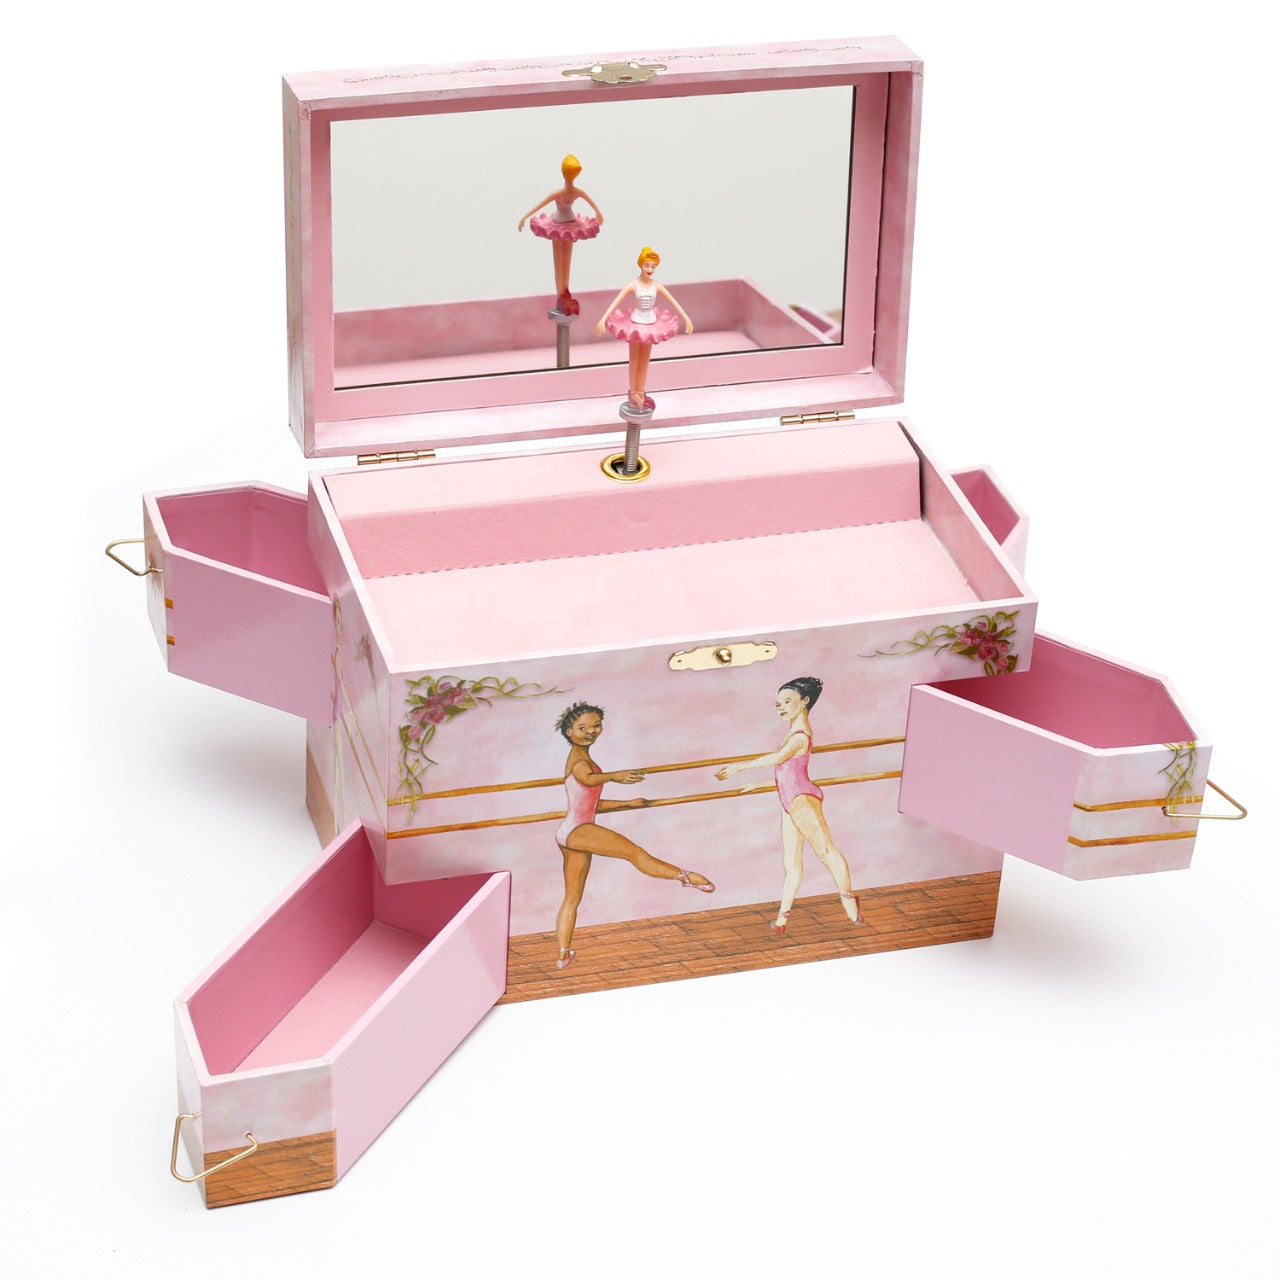 Ballerina Musical Jewelry Box - Swan Lake Tune